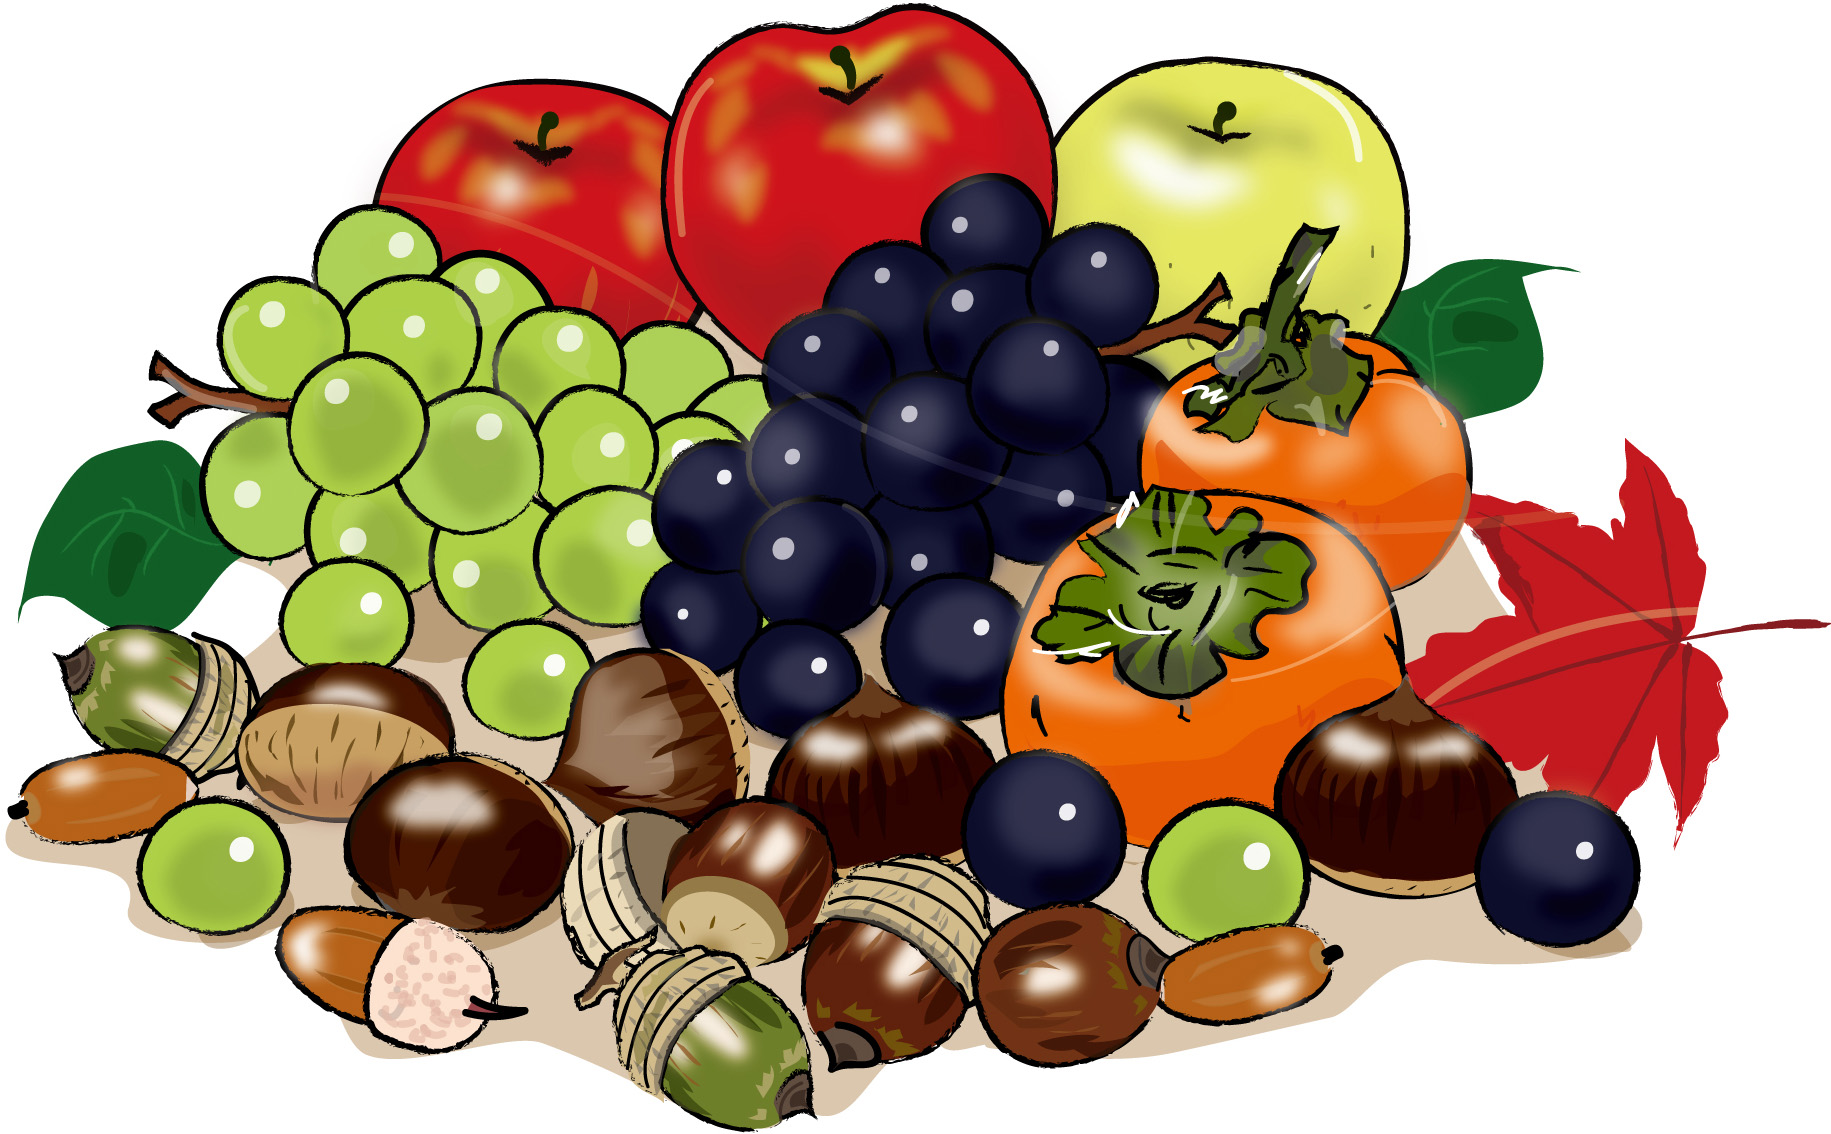 秋の印刷用イラスト素材 秋 食べ物の素材 秋の果物3 ダウンロード